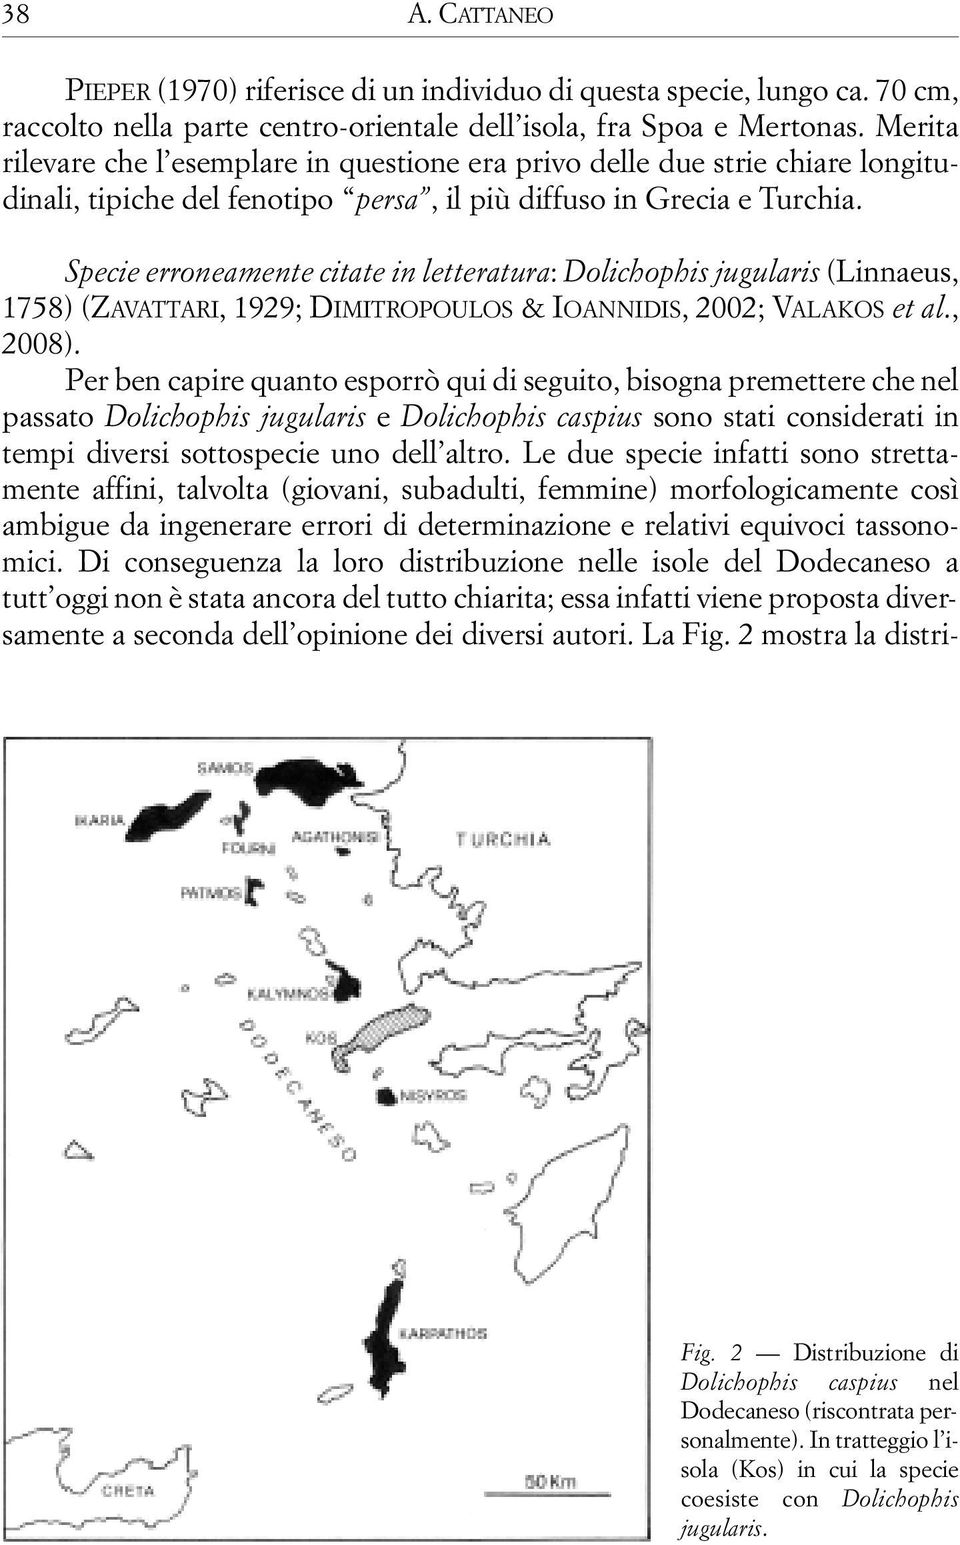 Specie erroneamente citate in letteratura: Dolichophis jugularis (Linnaeus, 1758) (ZAVATTARI, 1929; DIMITROPOULOS & IOANNIDIS, 2002; VALAKOS et al., 2008).